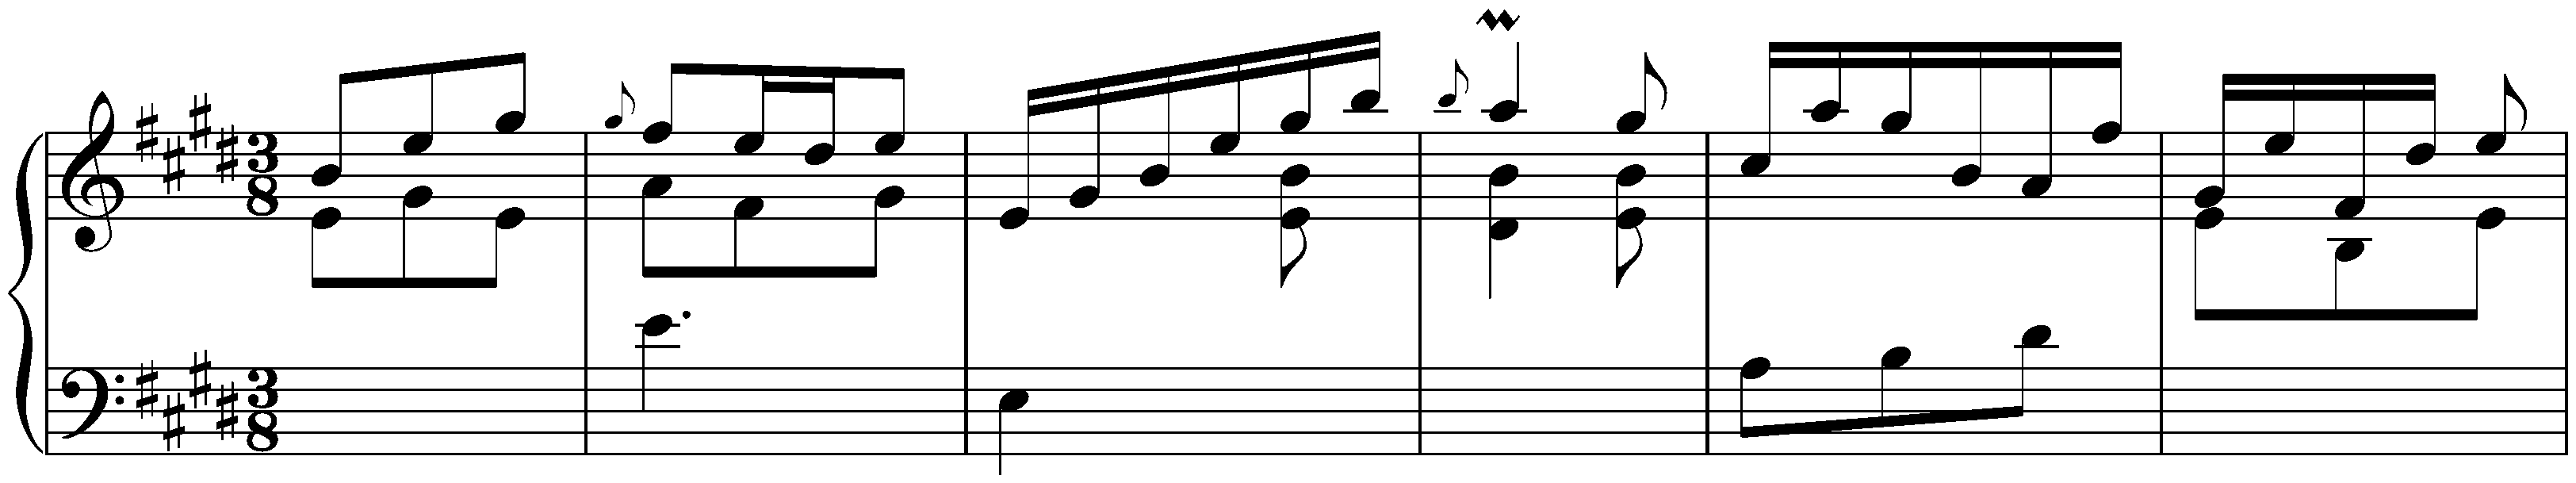 Sonatas found in Barcelona; 1. E major